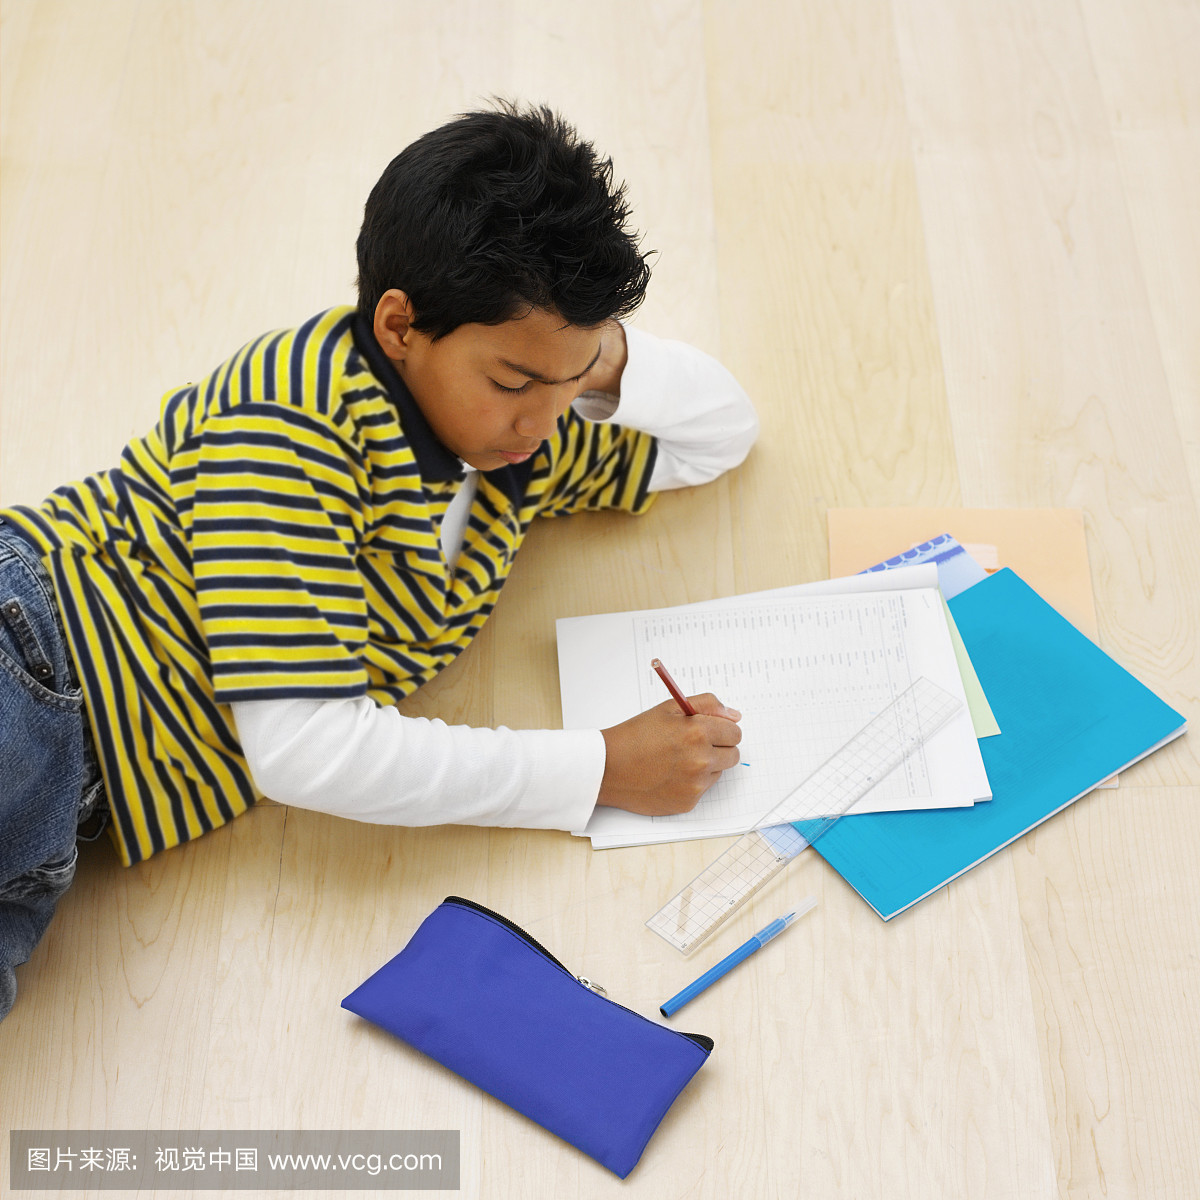 一个男孩写在纸上,躺在地上的高角度视图